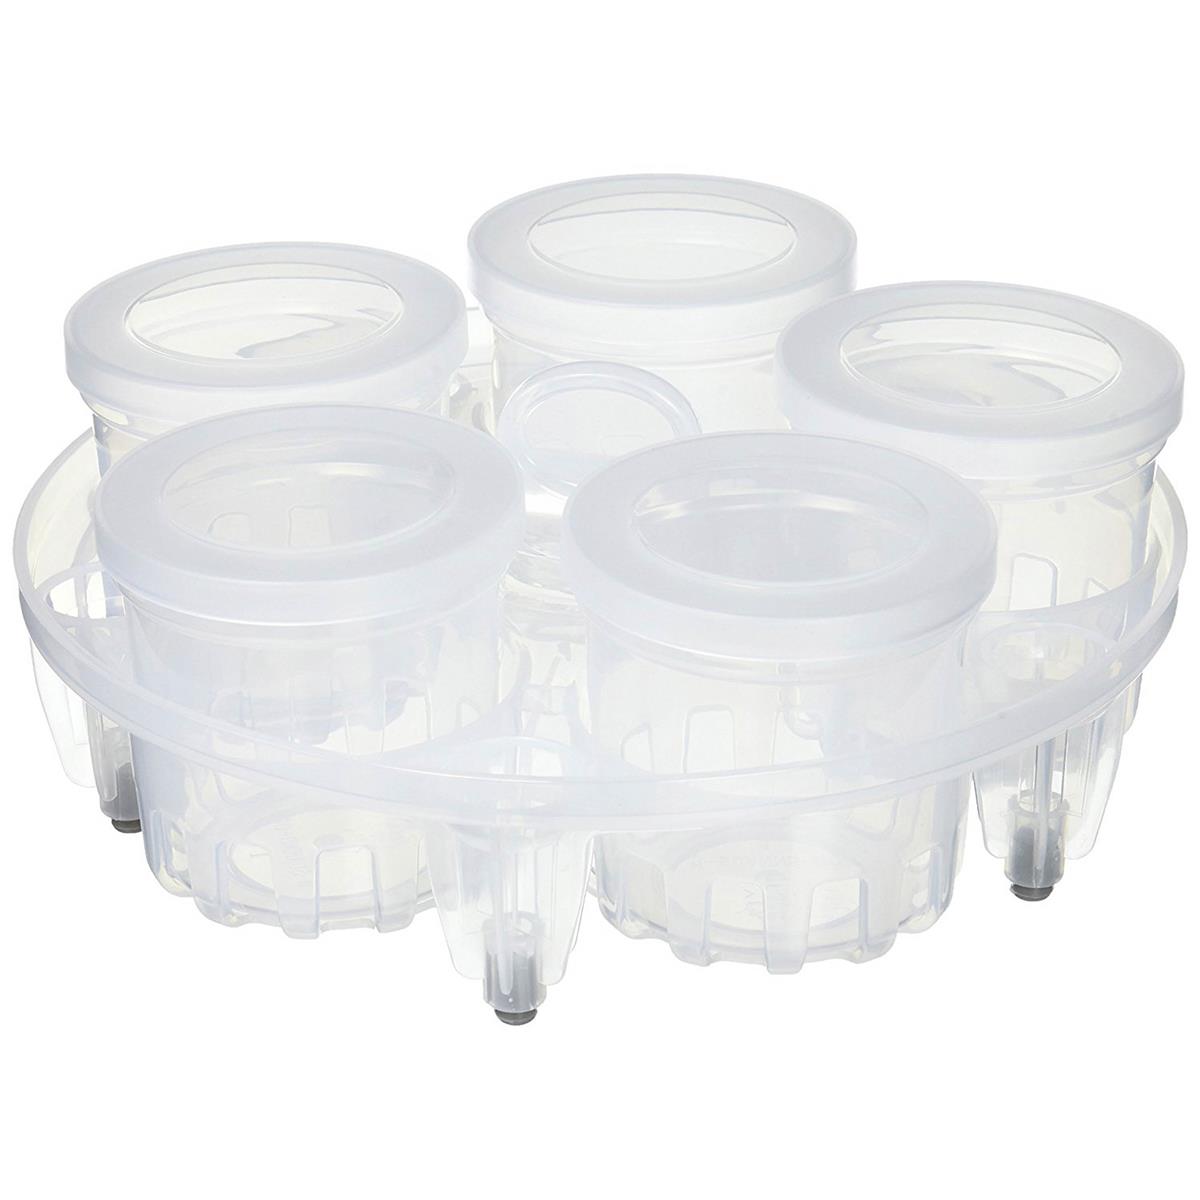 ® - yogurt / sterilizer set for 5.7 and 8 liter models